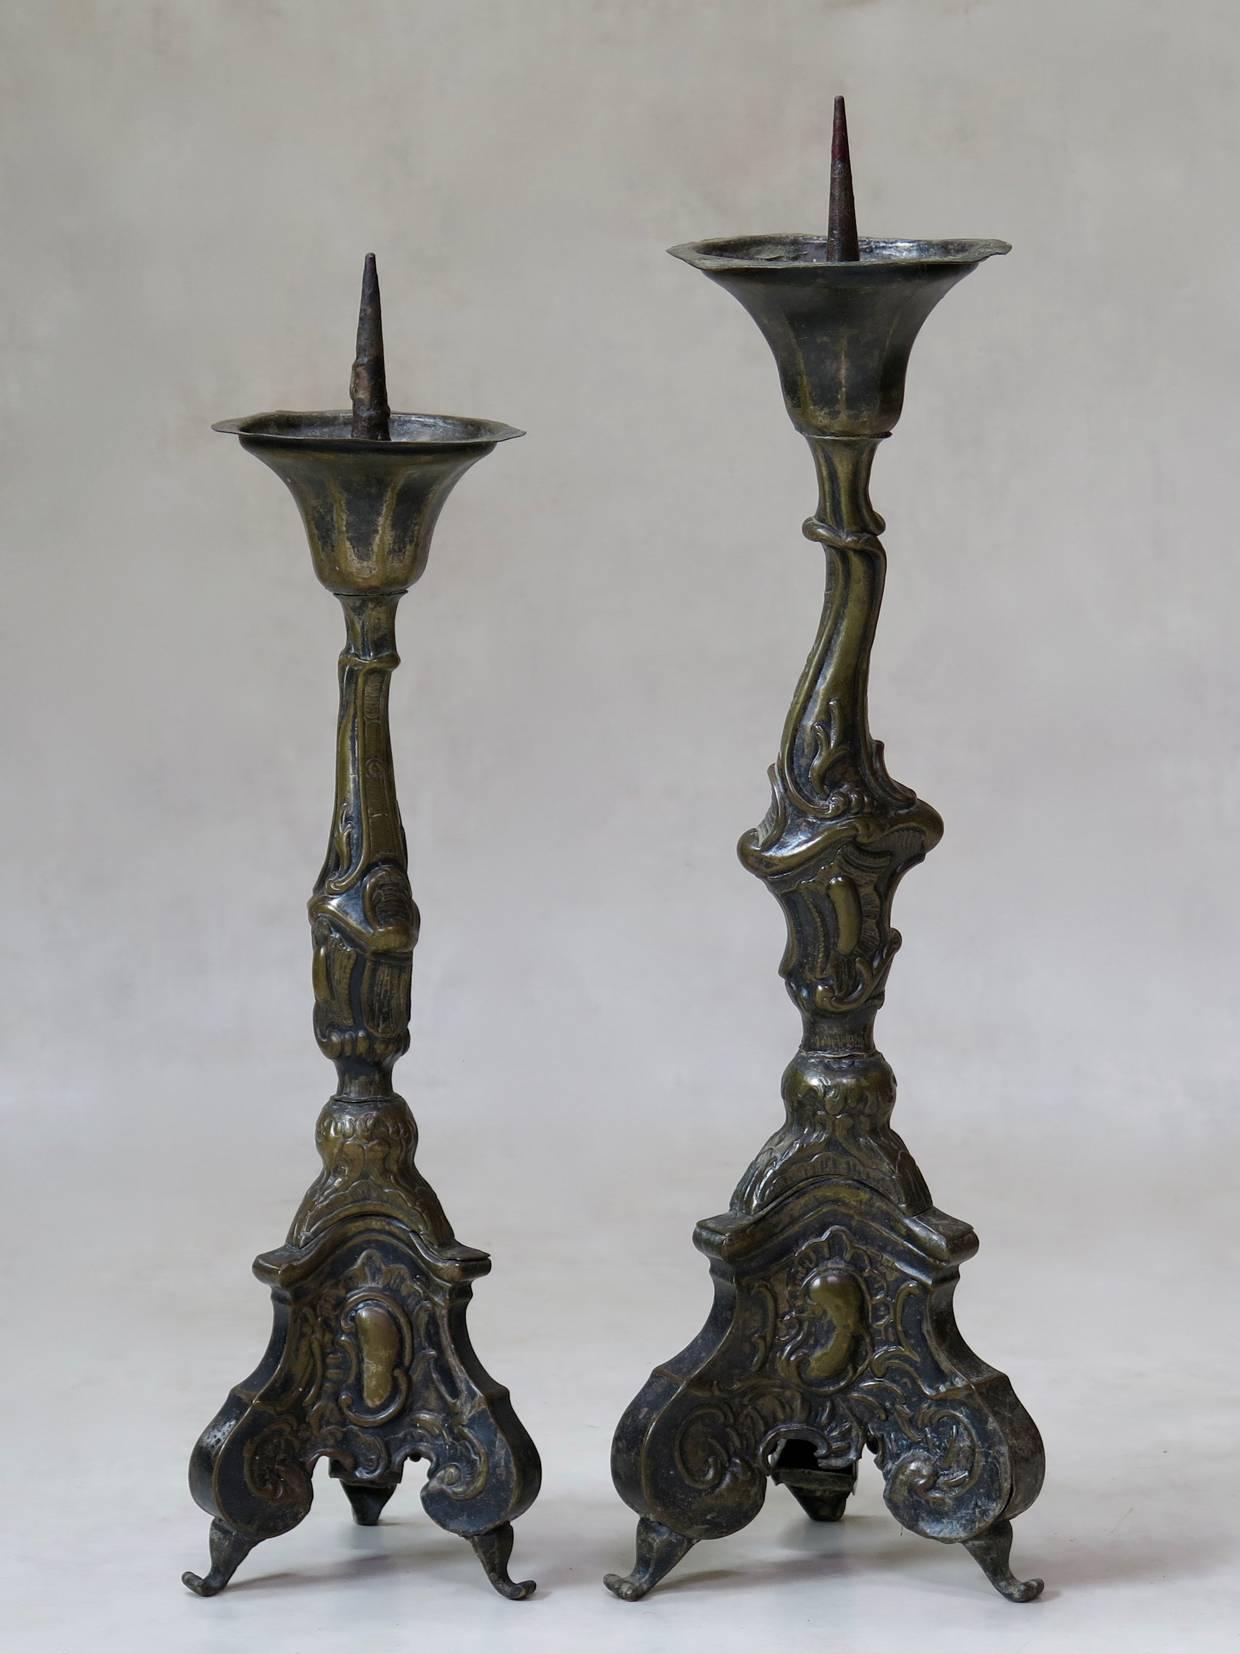 Ungewöhnliches Paar großer Kerzenleuchter aus repoussiertem Kupfer im Stil von Louis XV.

Die unten angegebenen Maße gelten für den größeren Kerzenhalter. Der kleinere misst (in Zentimetern):

Höhe: 53.
Durchmesser: 16.